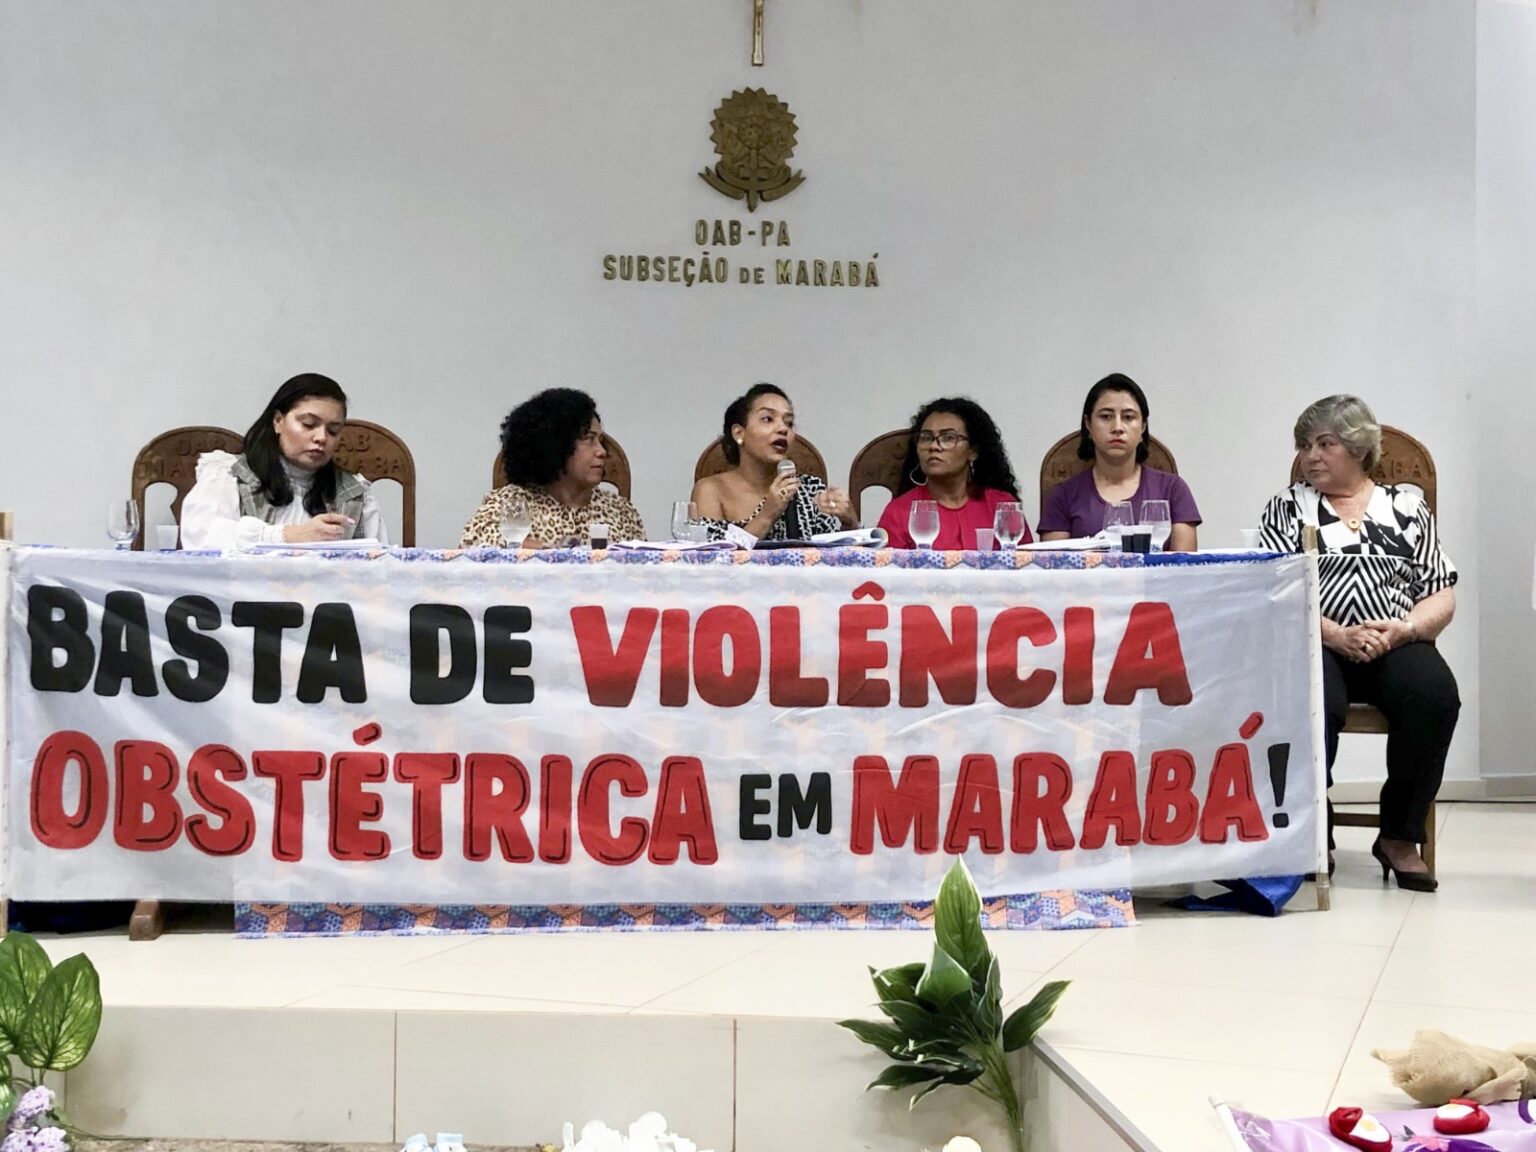 Casos de violência obstétrica e neonatal em Marabá serão denunciados à ONU